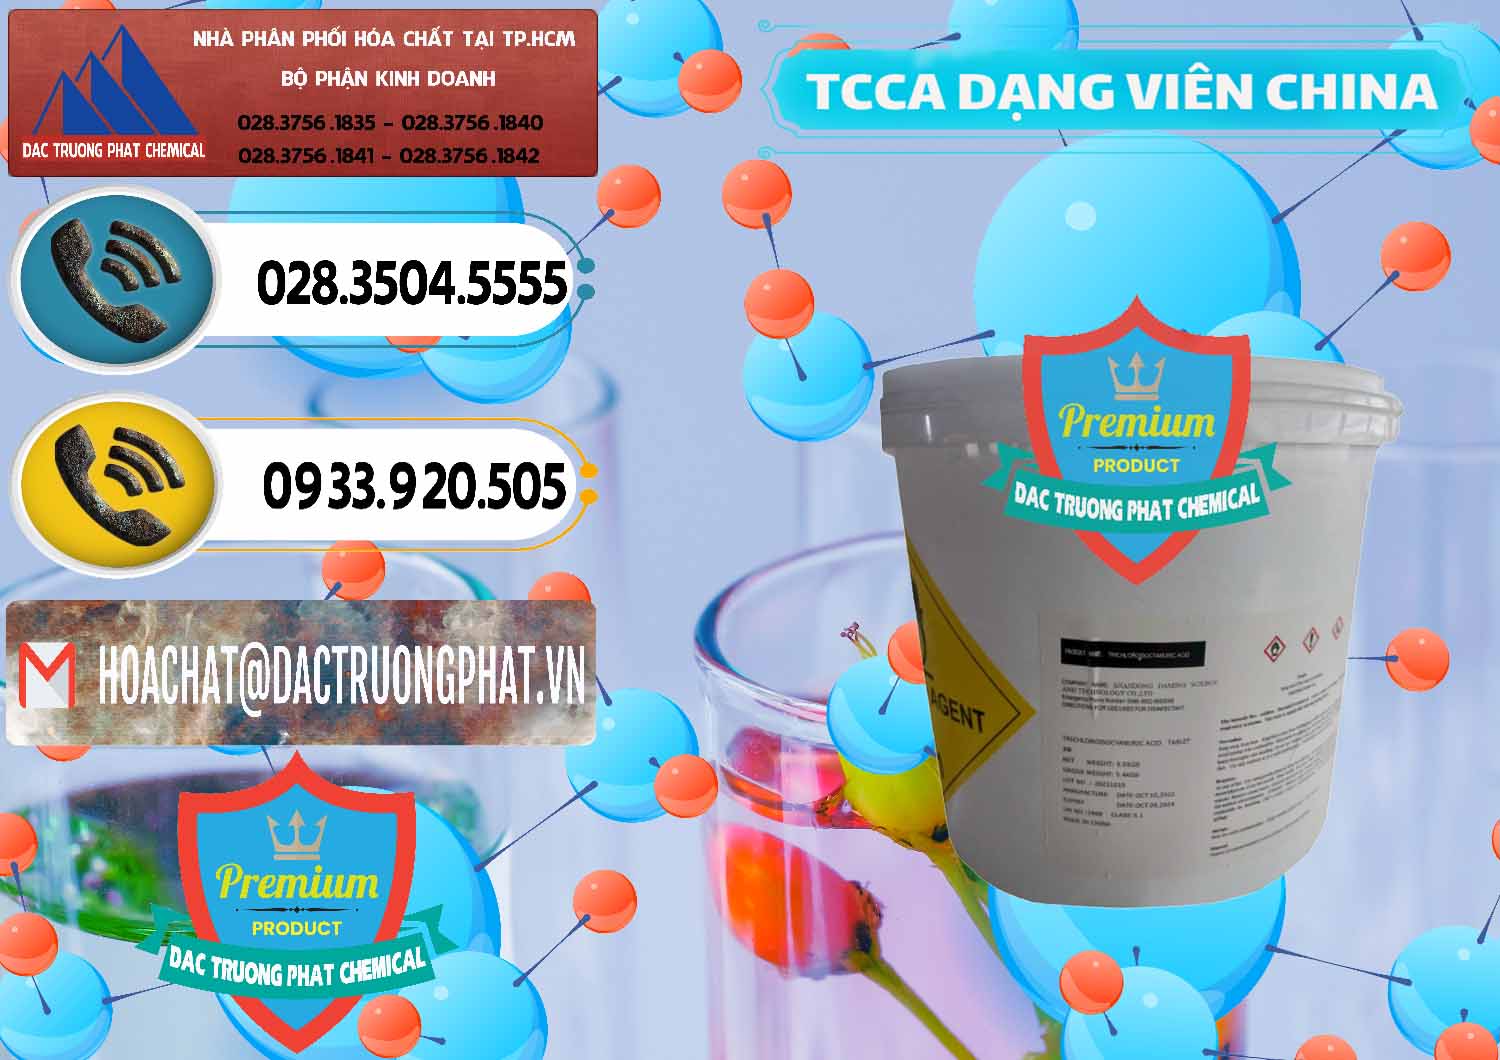 Nơi chuyên kinh doanh _ bán TCCA - Acid Trichloroisocyanuric Dạng Viên Thùng 5kg Trung Quốc China - 0379 - Cty nhập khẩu & phân phối hóa chất tại TP.HCM - hoachatdetnhuom.vn